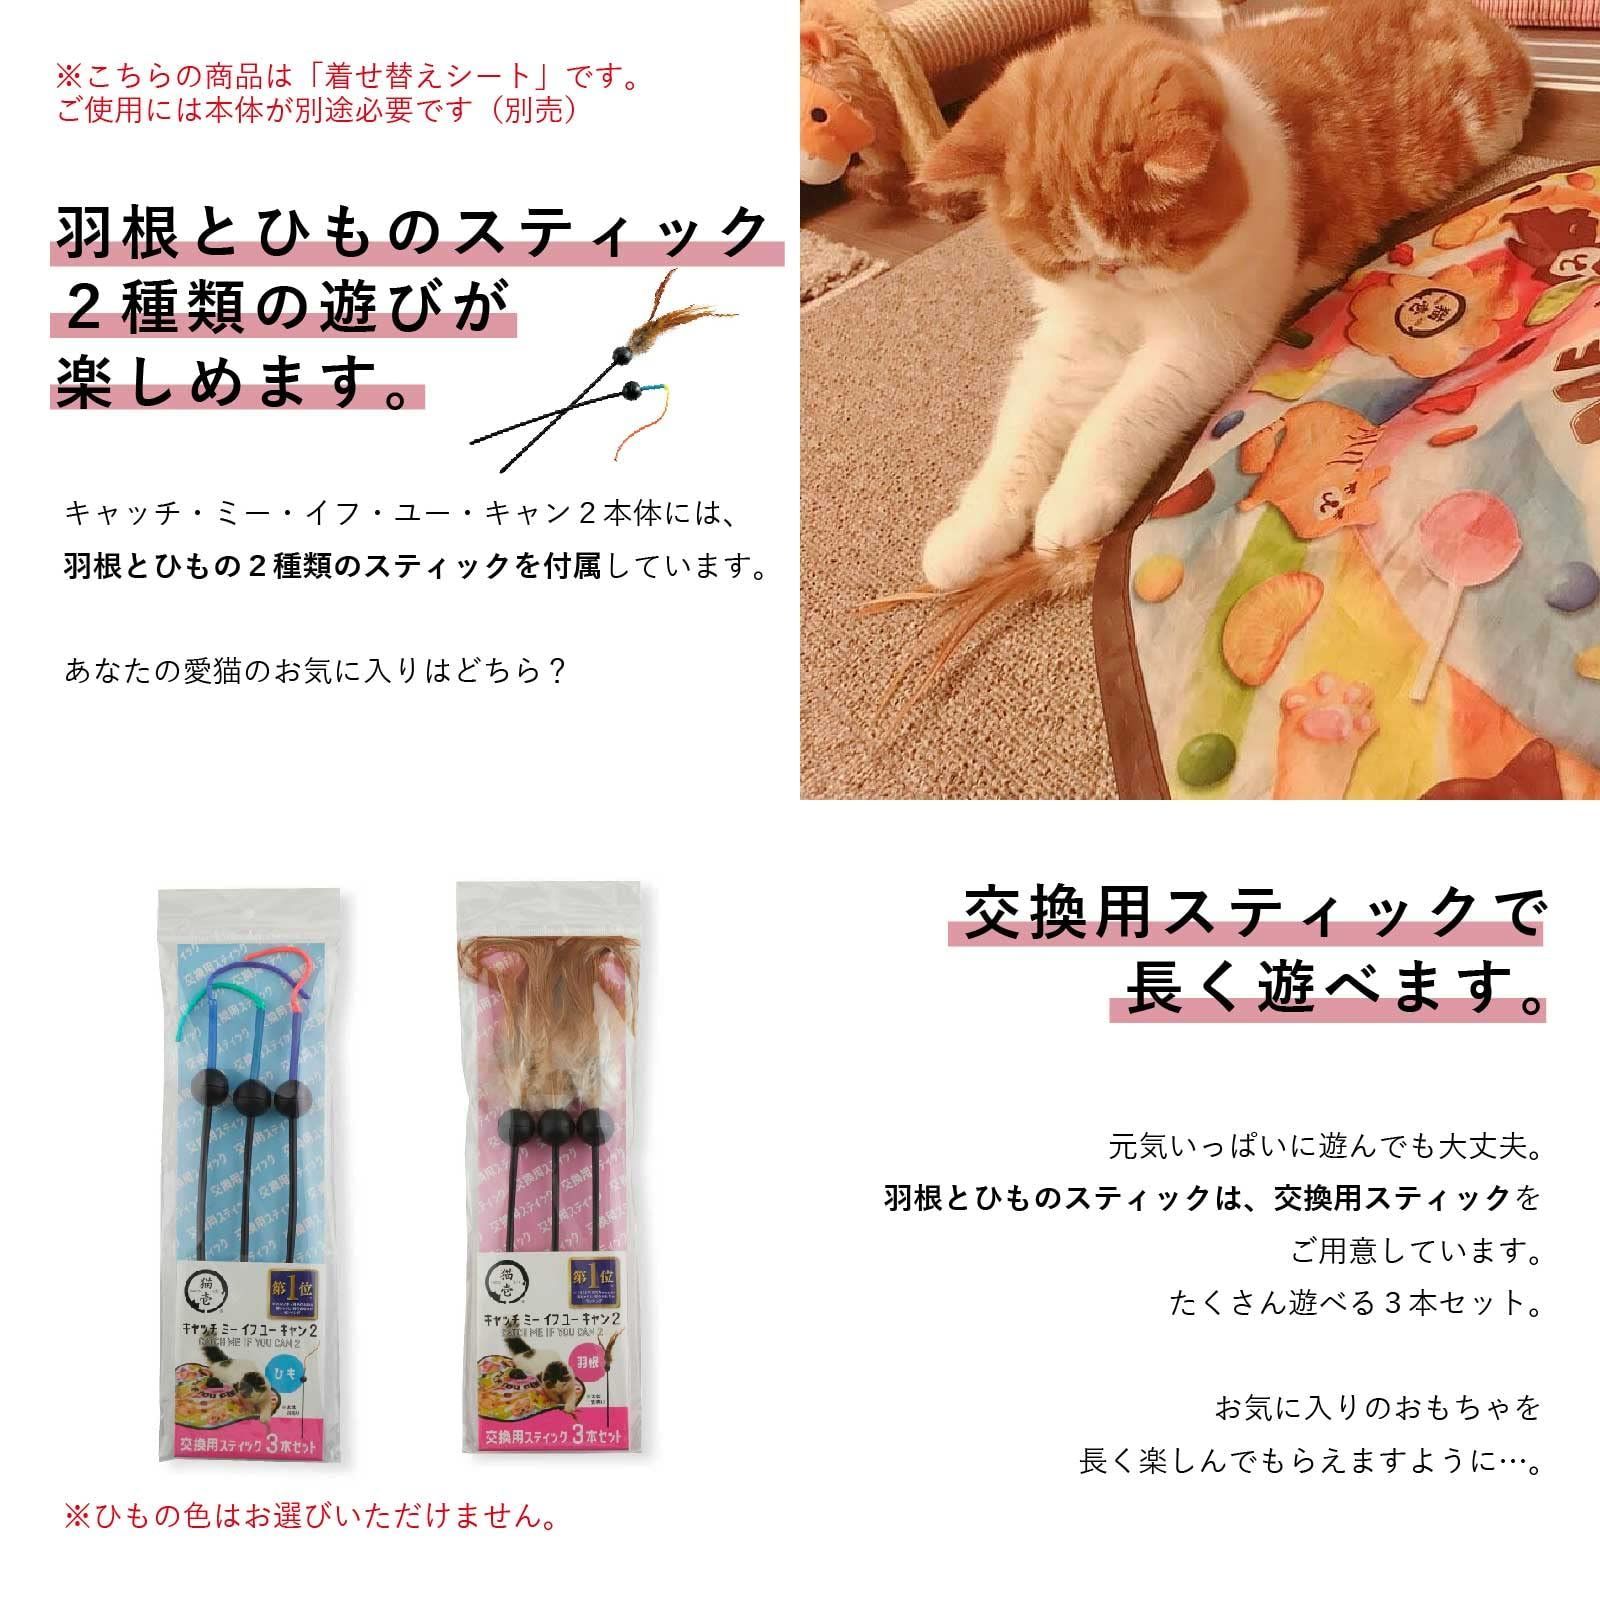 猫壱necoichi キャッチ・ミー・イフ・ユー・キャン2 猫用電動おもちゃ